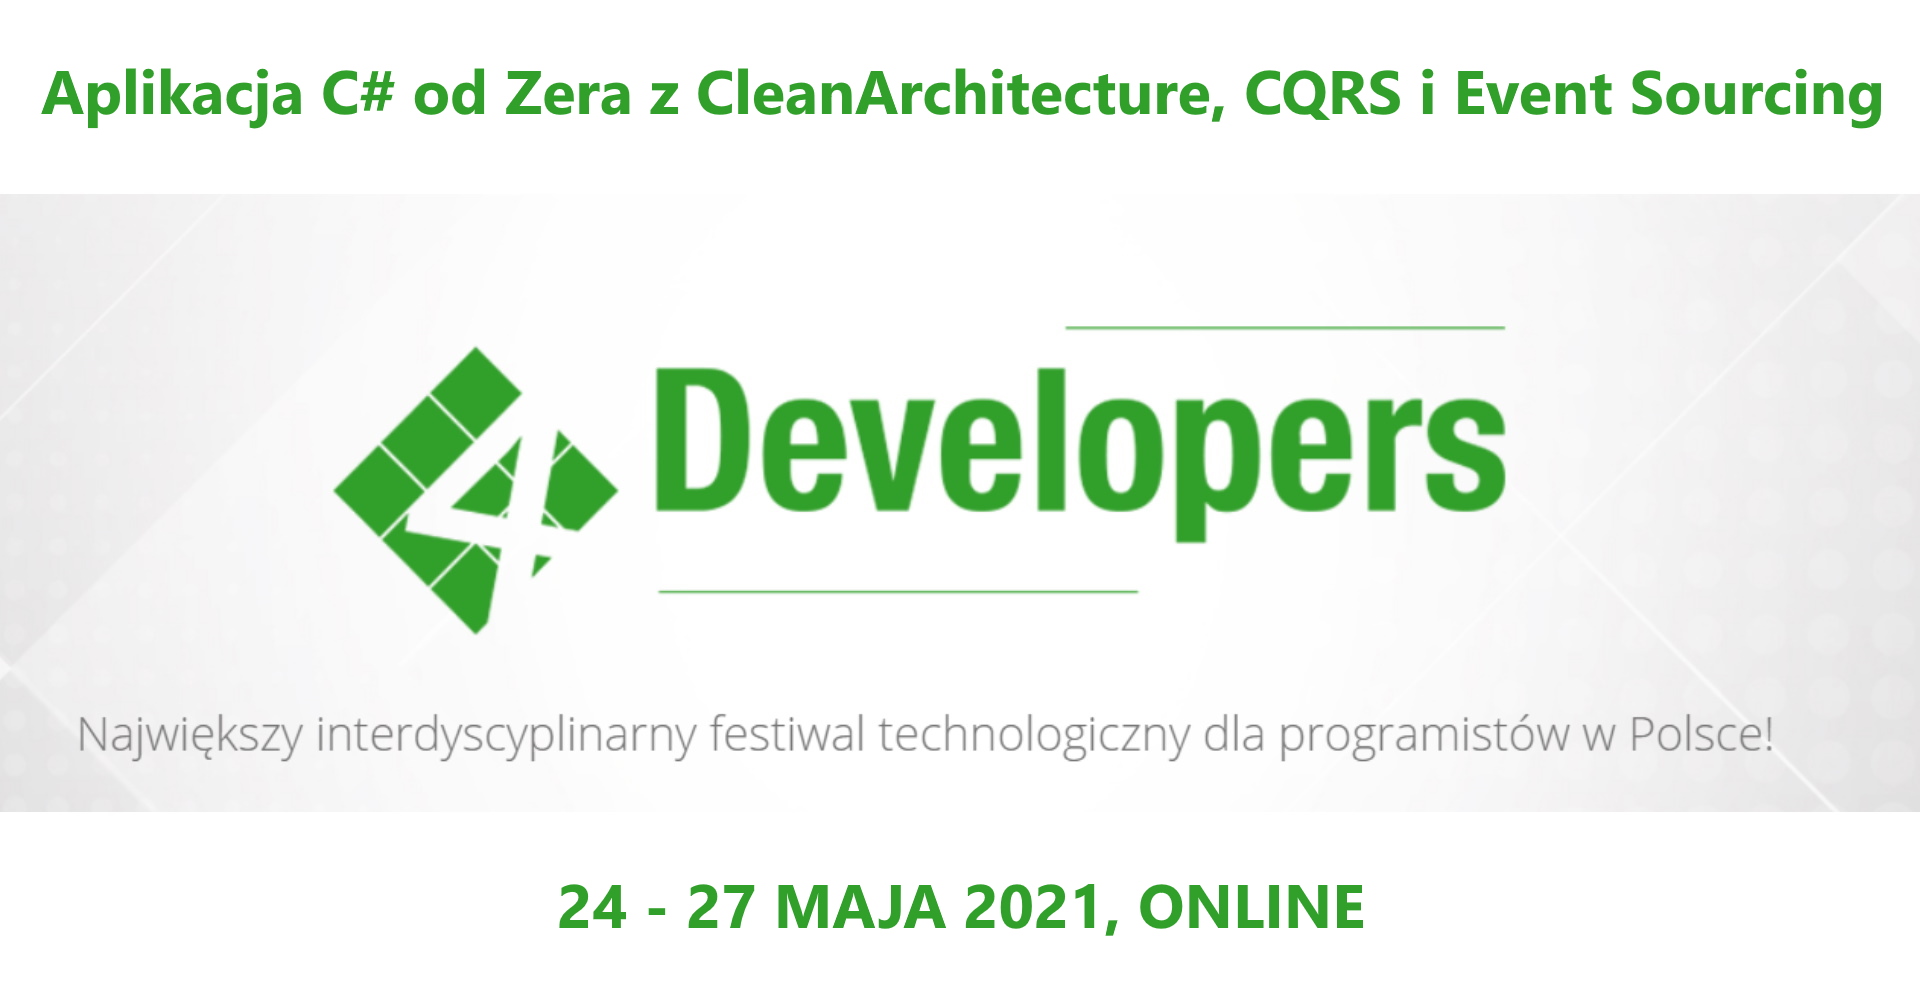 Aplikacja C# od Zera z CleanArchitecture, CQRS i Event Sourcing obrazek reklamujący wydarzenie